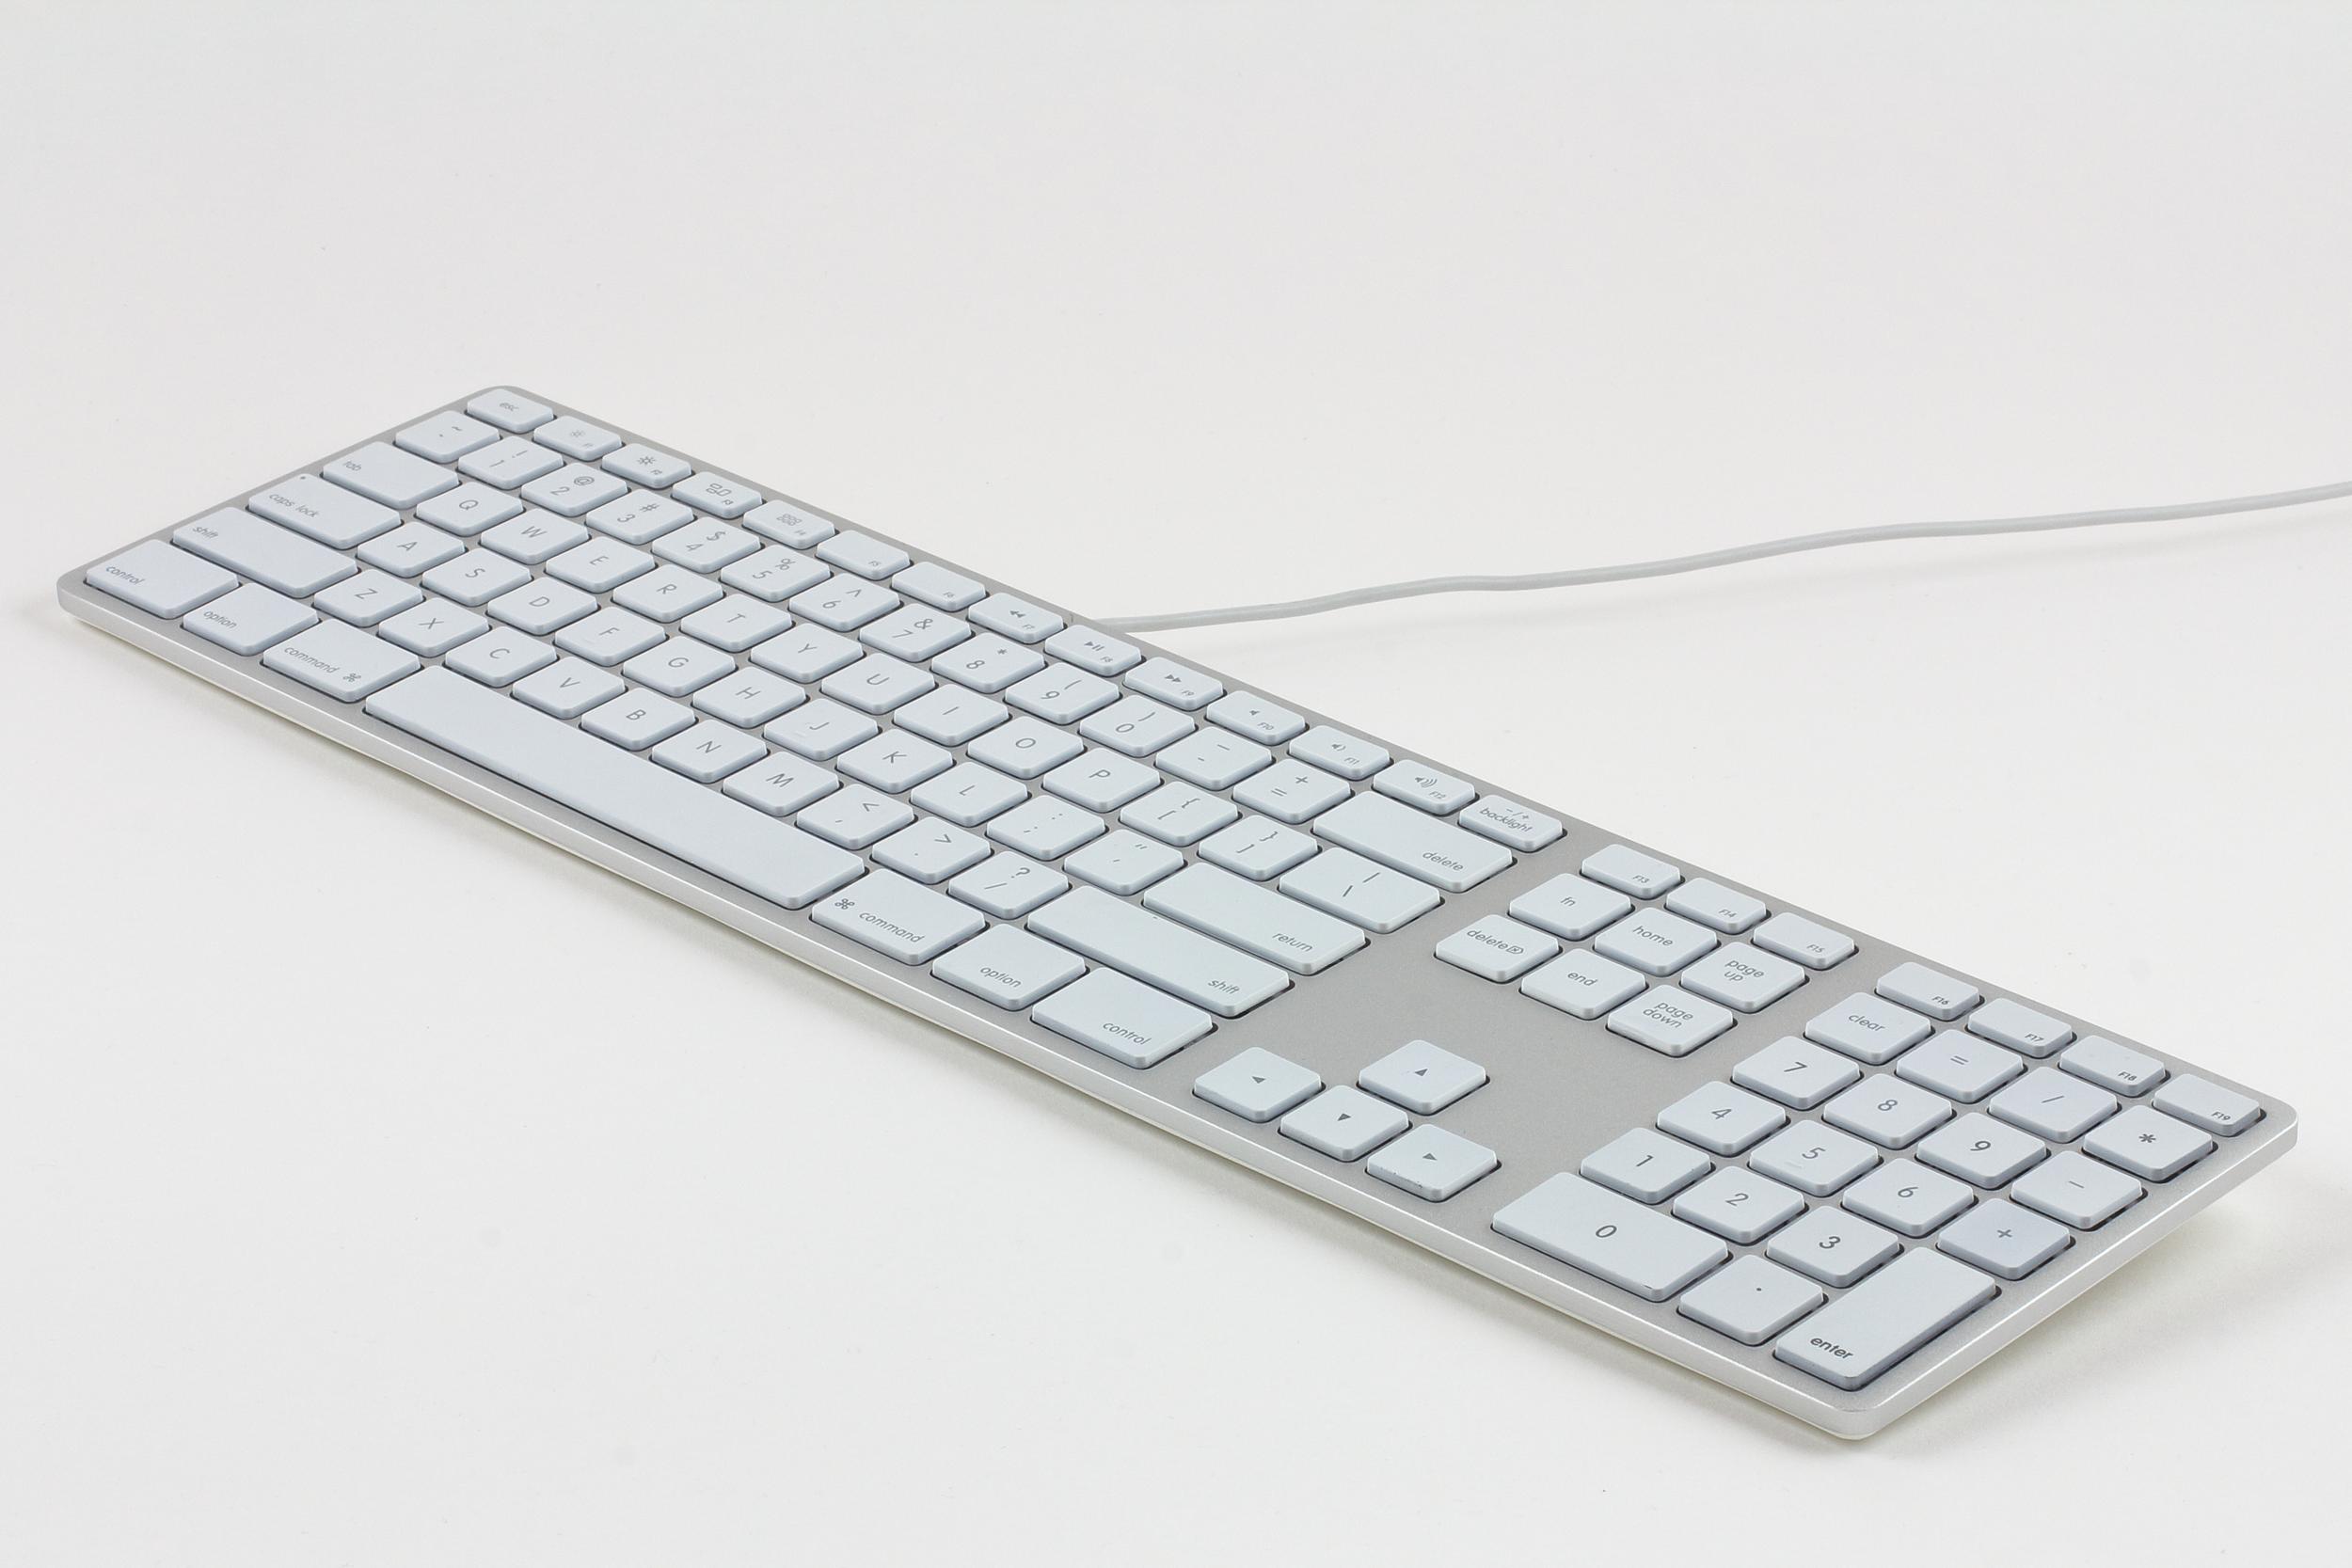 Tastiera USB estesa in alluminio Matias con retroilluminazione TEDESCA per Mac OS - Argento con tasti bianchi